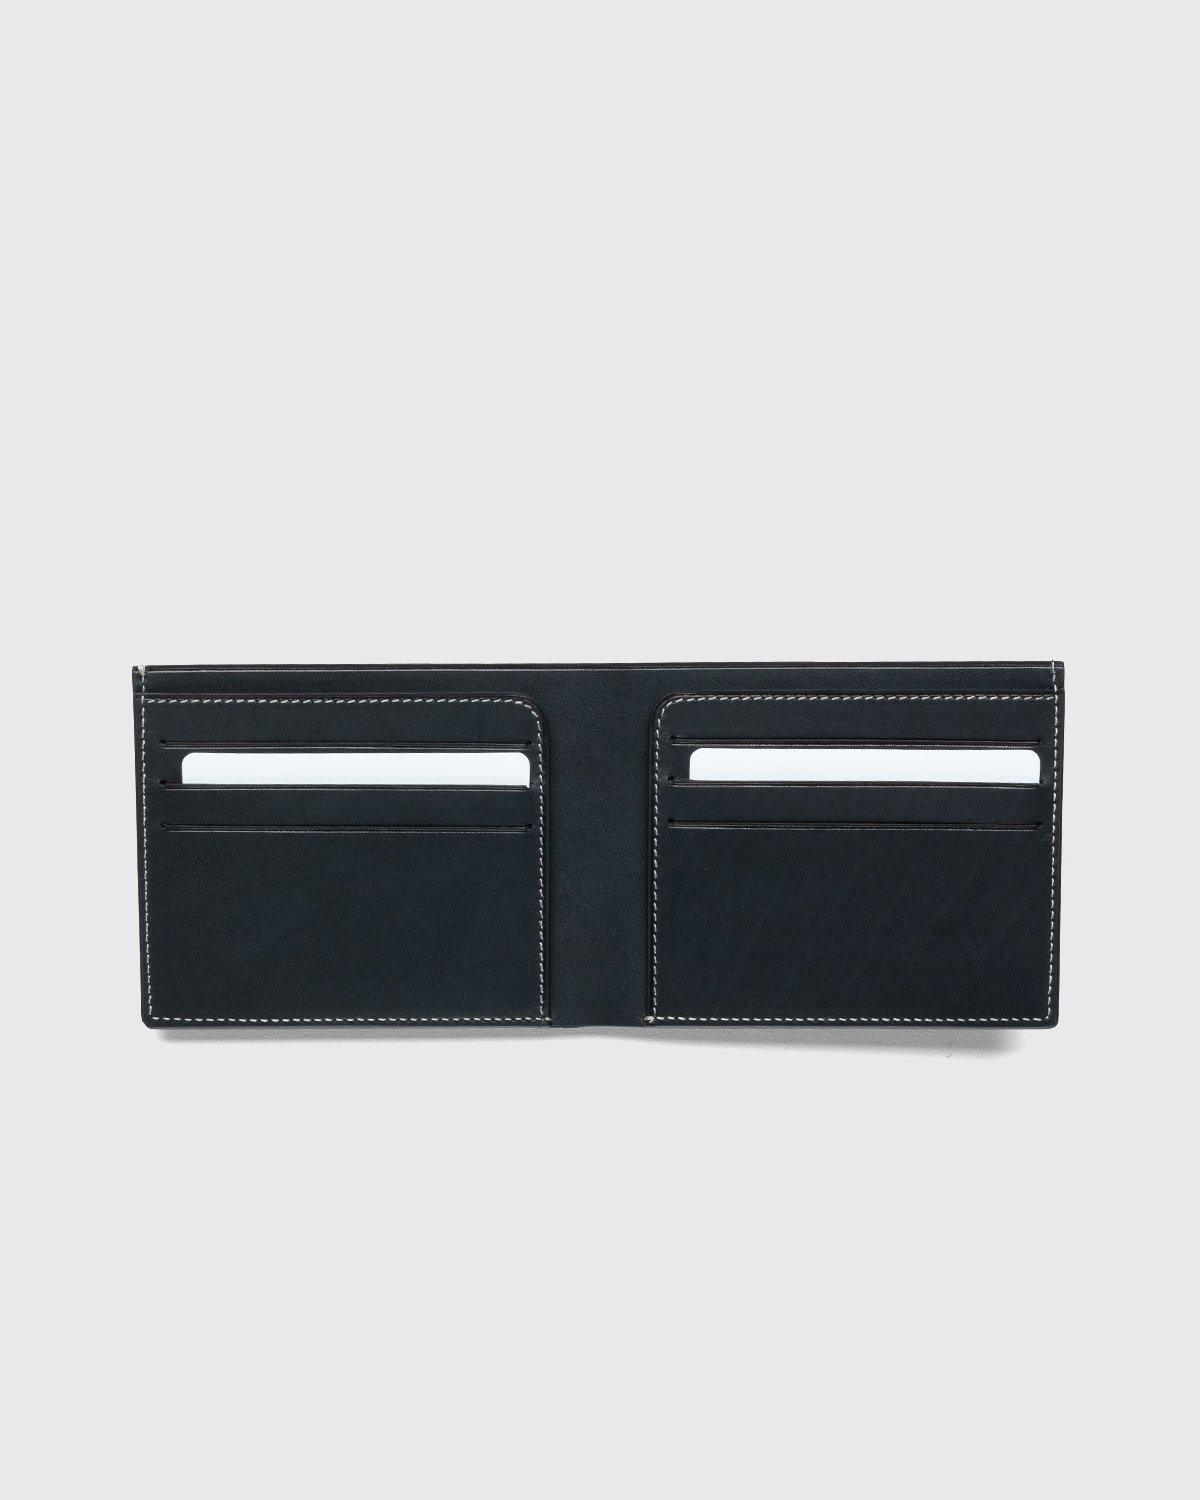 Jil Sander - Pocket Wallet Black - Accessories - Black - Image 3